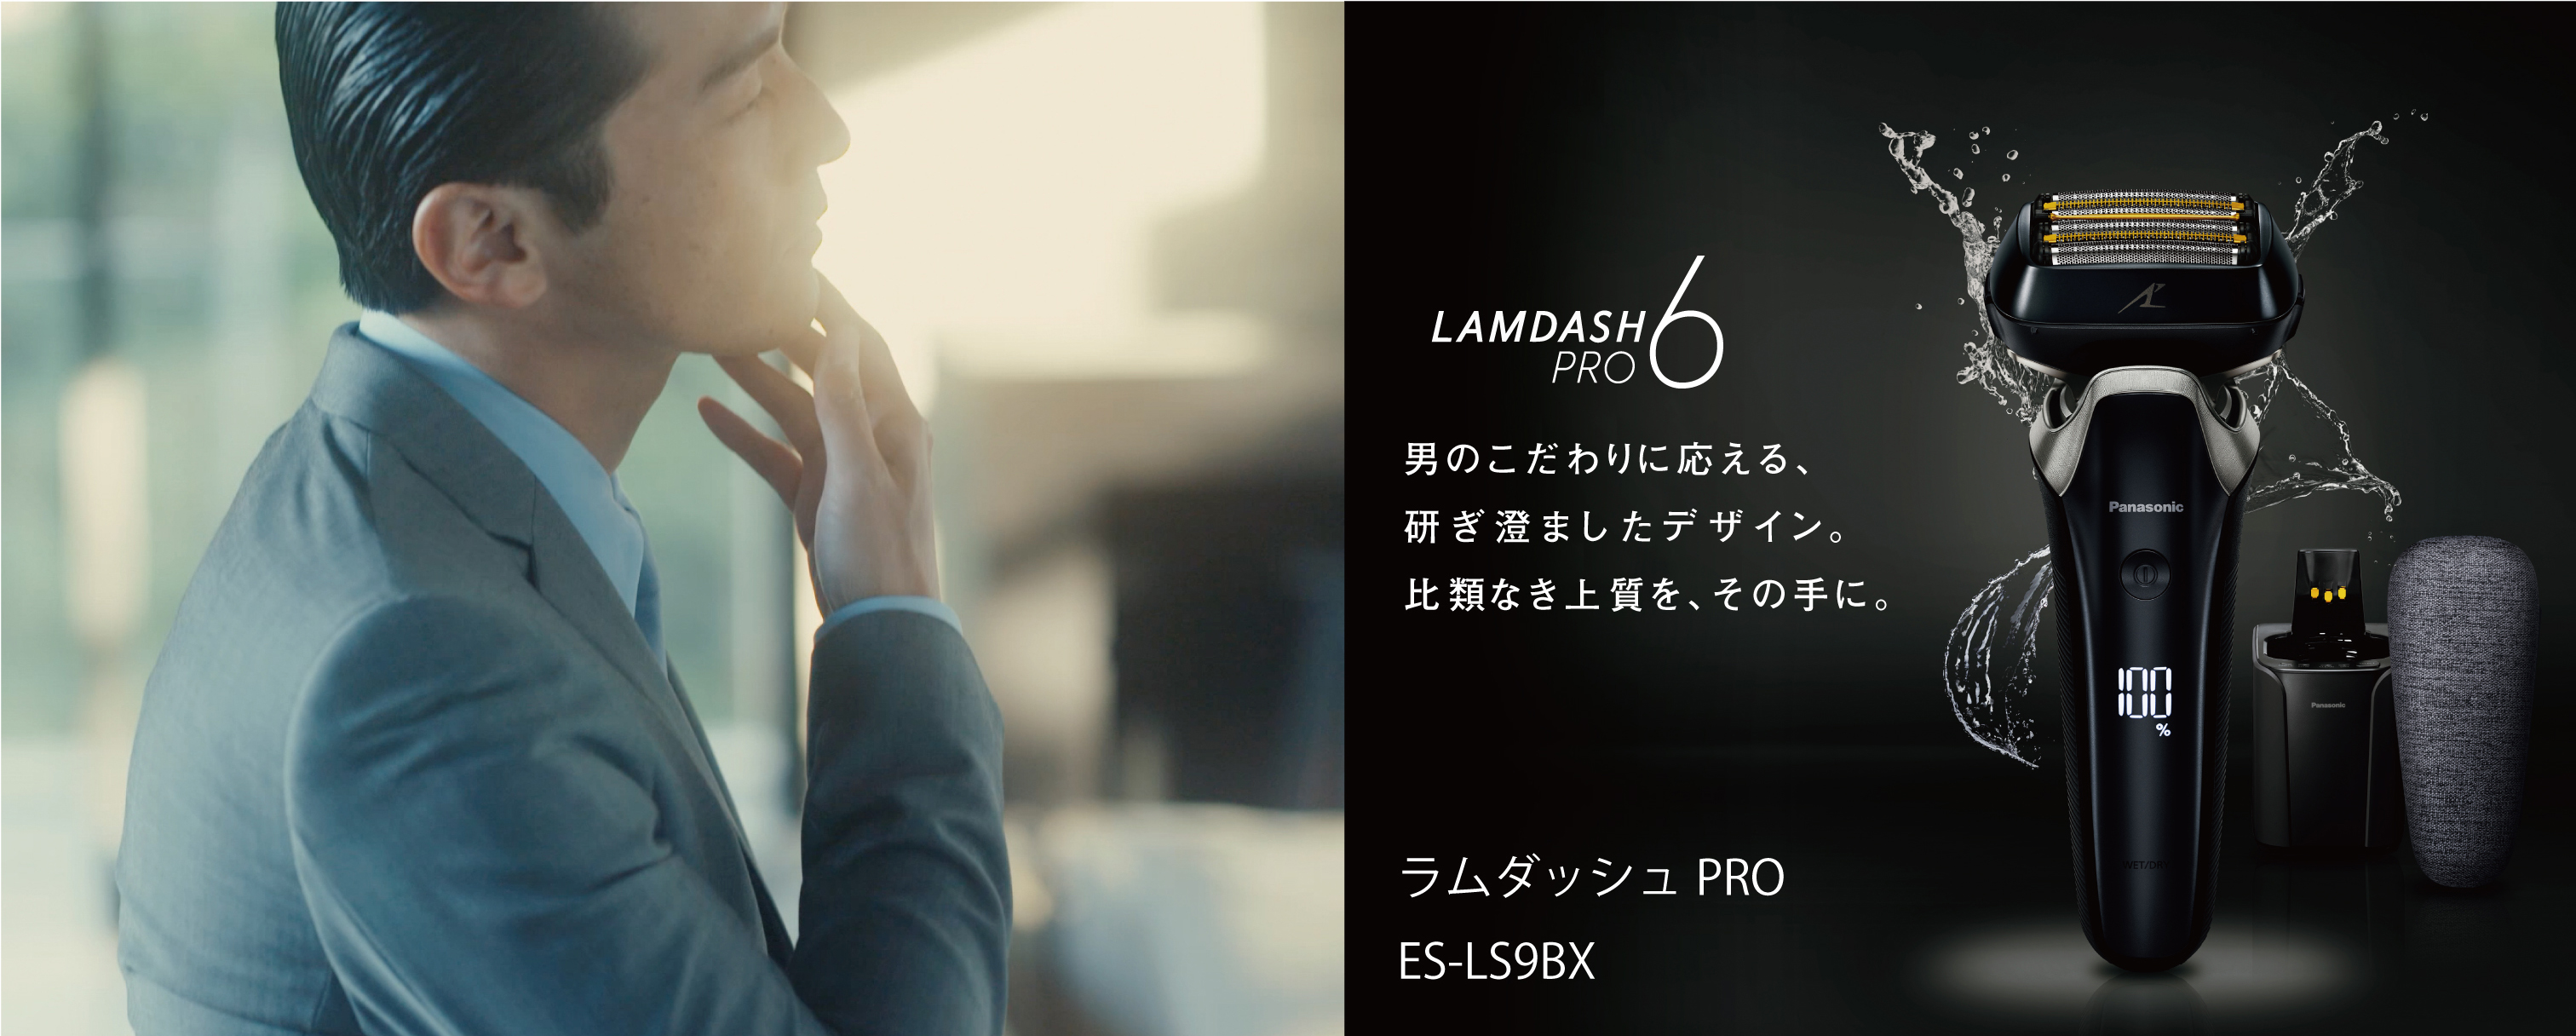 新品未使用　Panasonic ラムダッシュPRO  6枚刃 ES-LS9Q-K